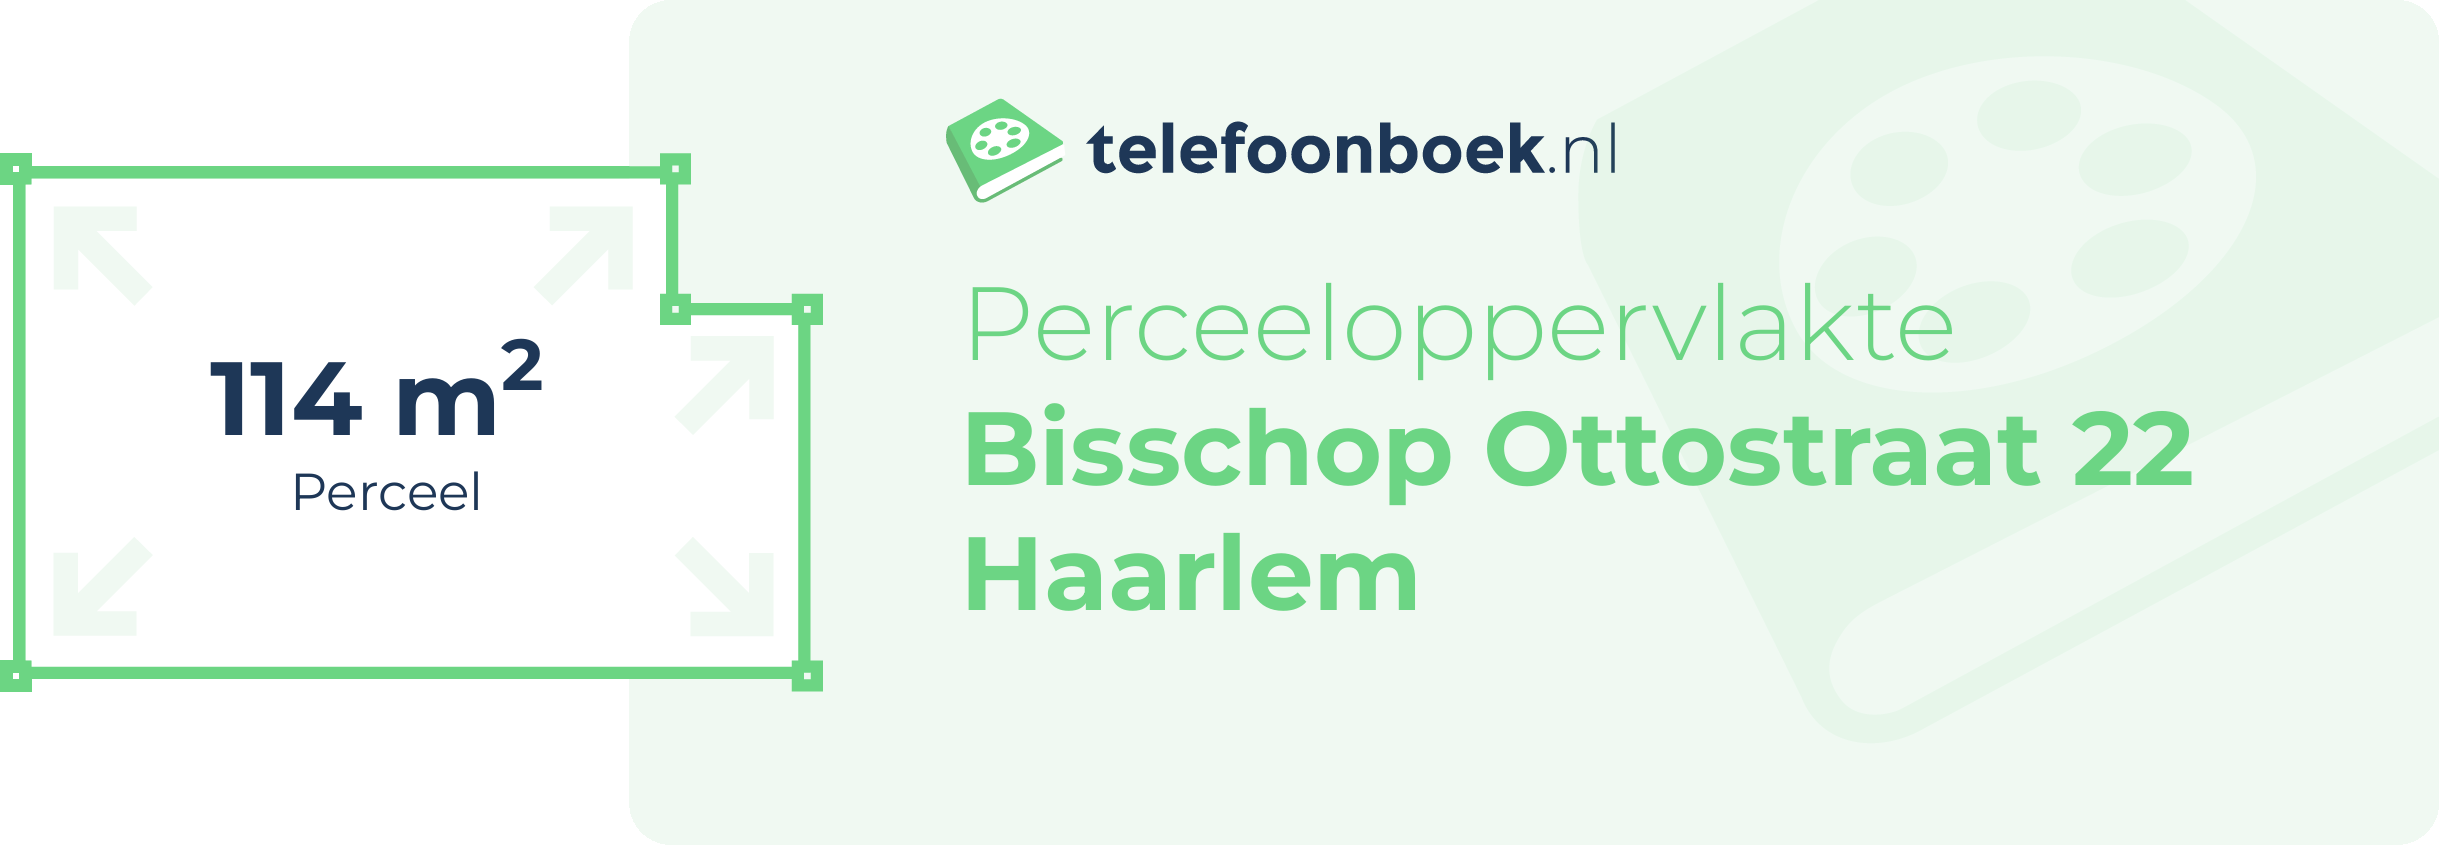 Perceeloppervlakte Bisschop Ottostraat 22 Haarlem